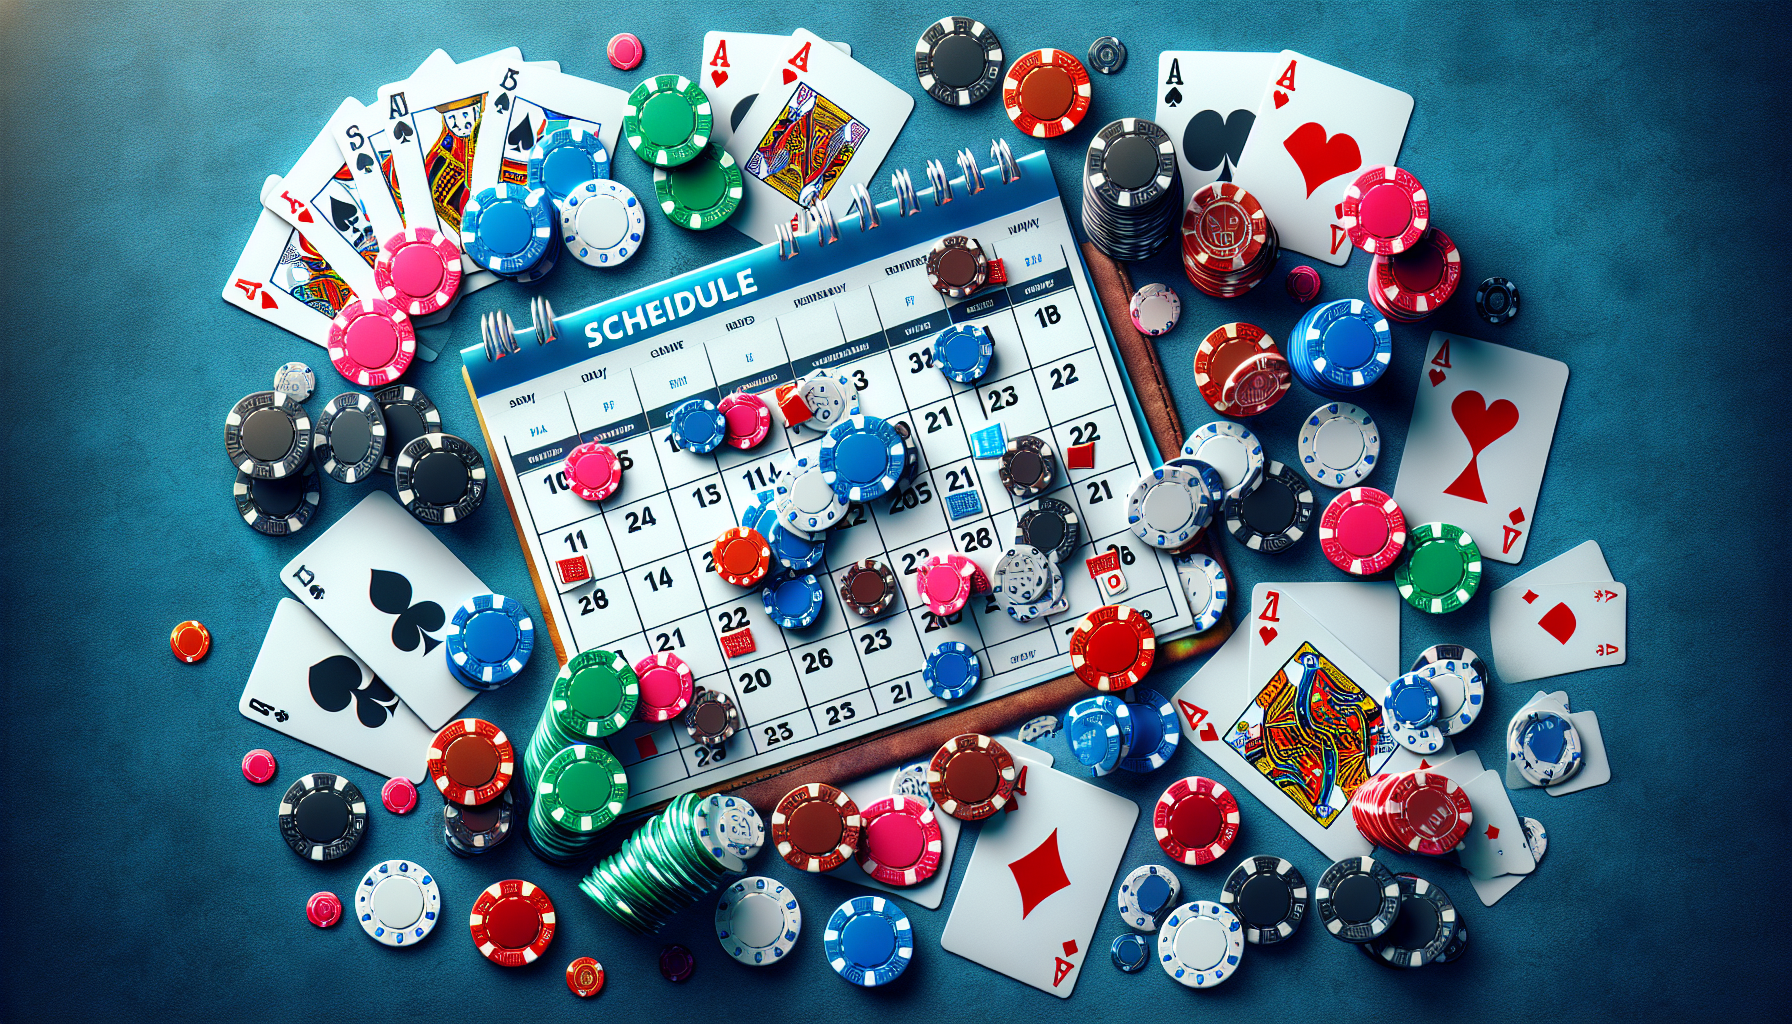 consultez le calendrier des tournois de poker et ne manquez aucun événement. trouvez les dates, les lieux et toutes les informations nécessaires pour participer aux tournois de poker.